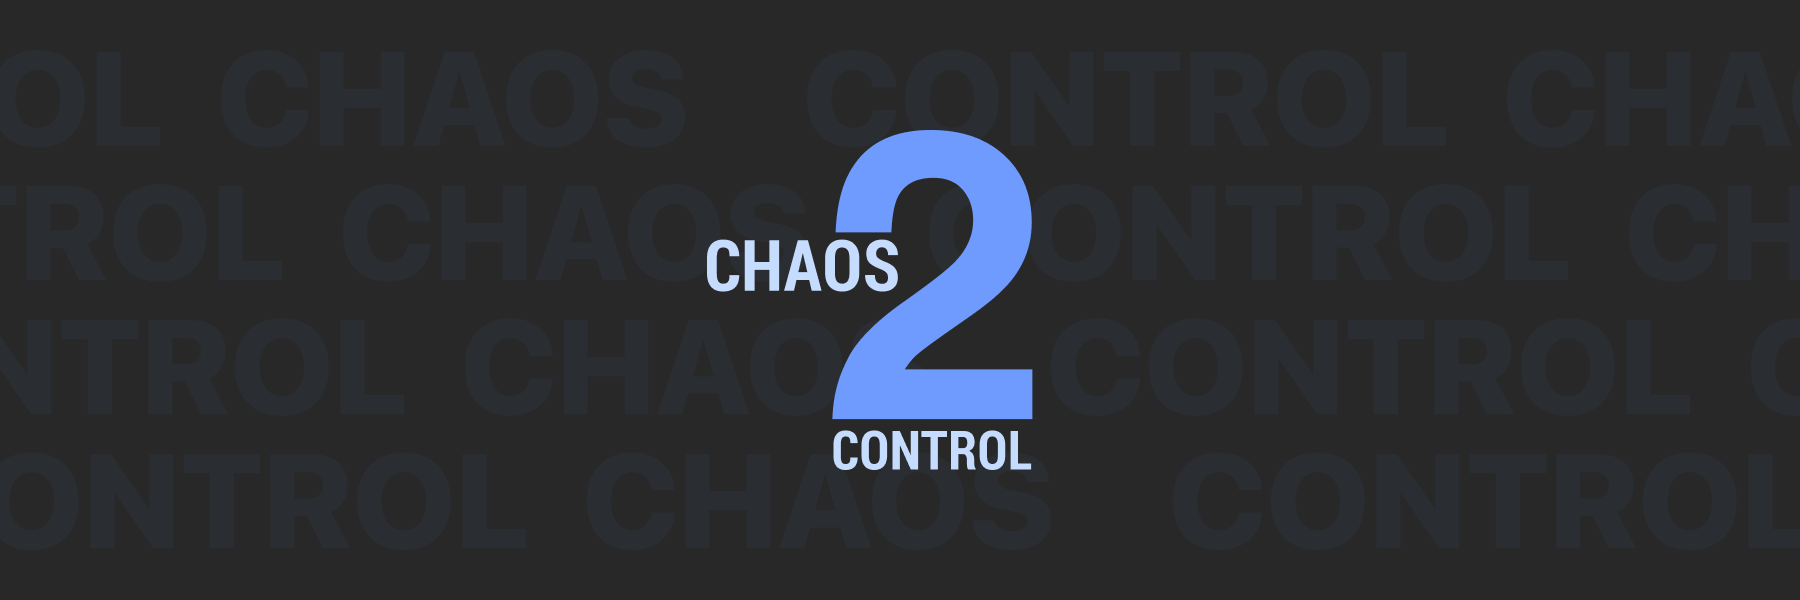 Релиз Хаос-контроль 2 для iOS и Android